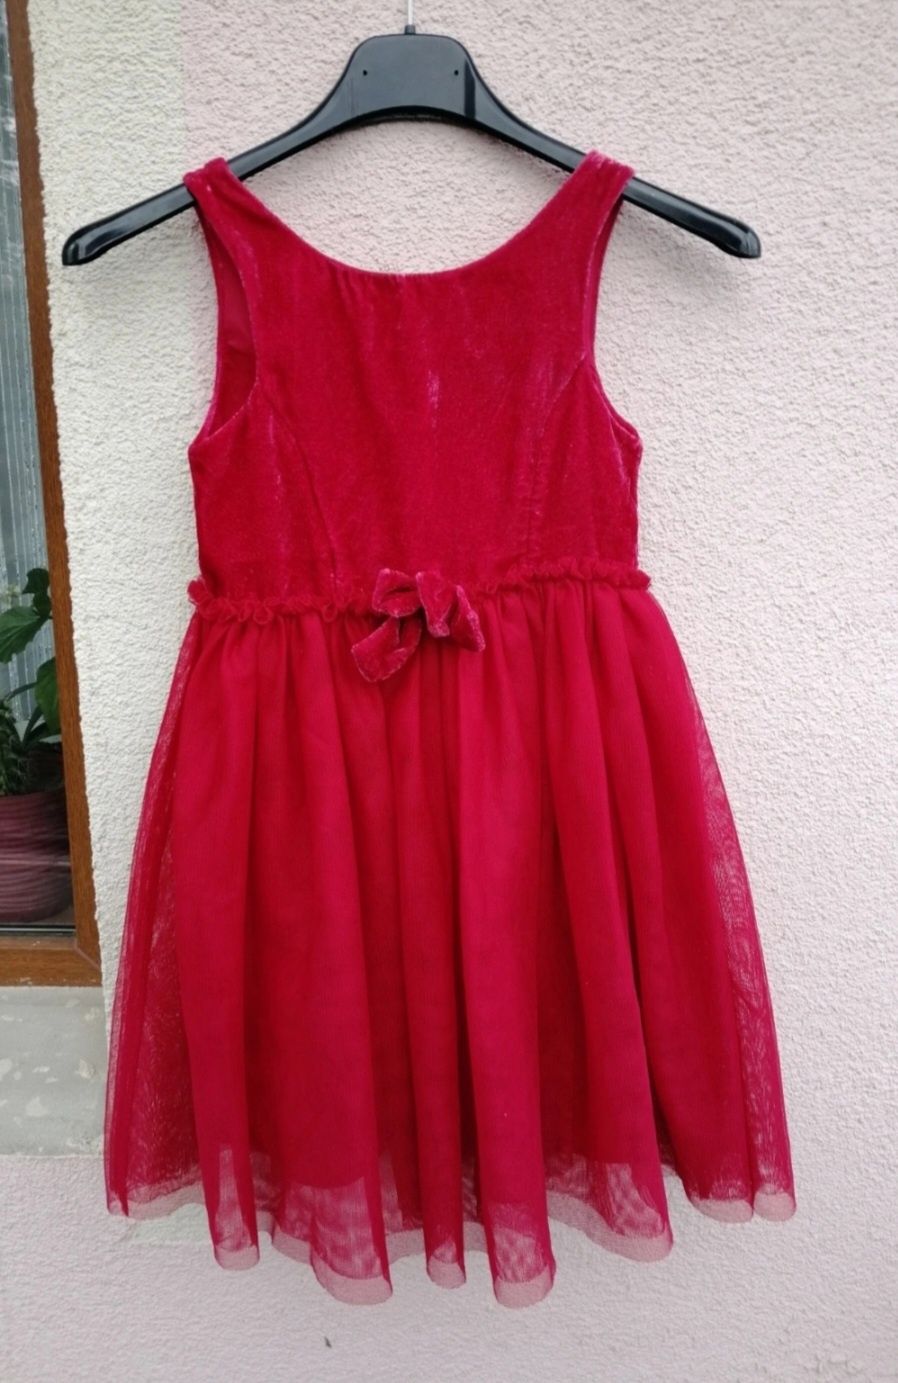 sukienka czerwona 116 h&m święta wesele lato Mikołajki Mikołaj